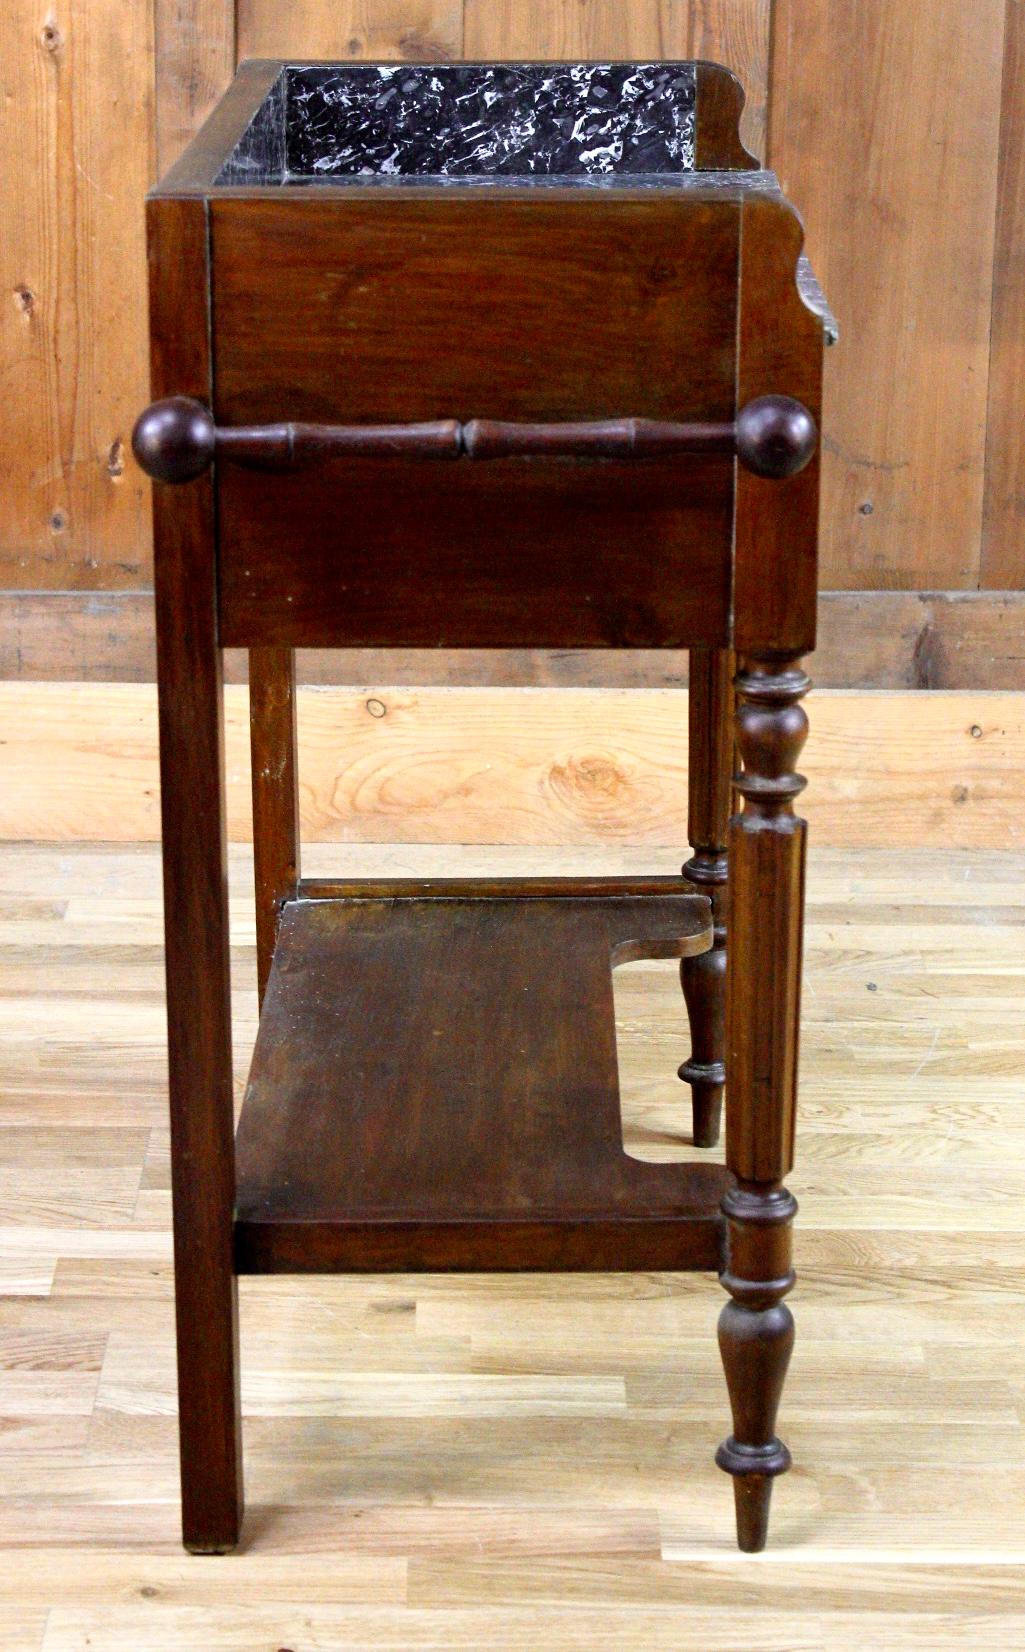 Belle commode en bois et marbre noir datant du milieu du 19e siècle. Cette table est composée de quatre pieds reliés par une étagère. La ceinture est habillée d'un tiroir. Le dessus est en marbre noir et blanc. Des deux côtés du meuble sont présents